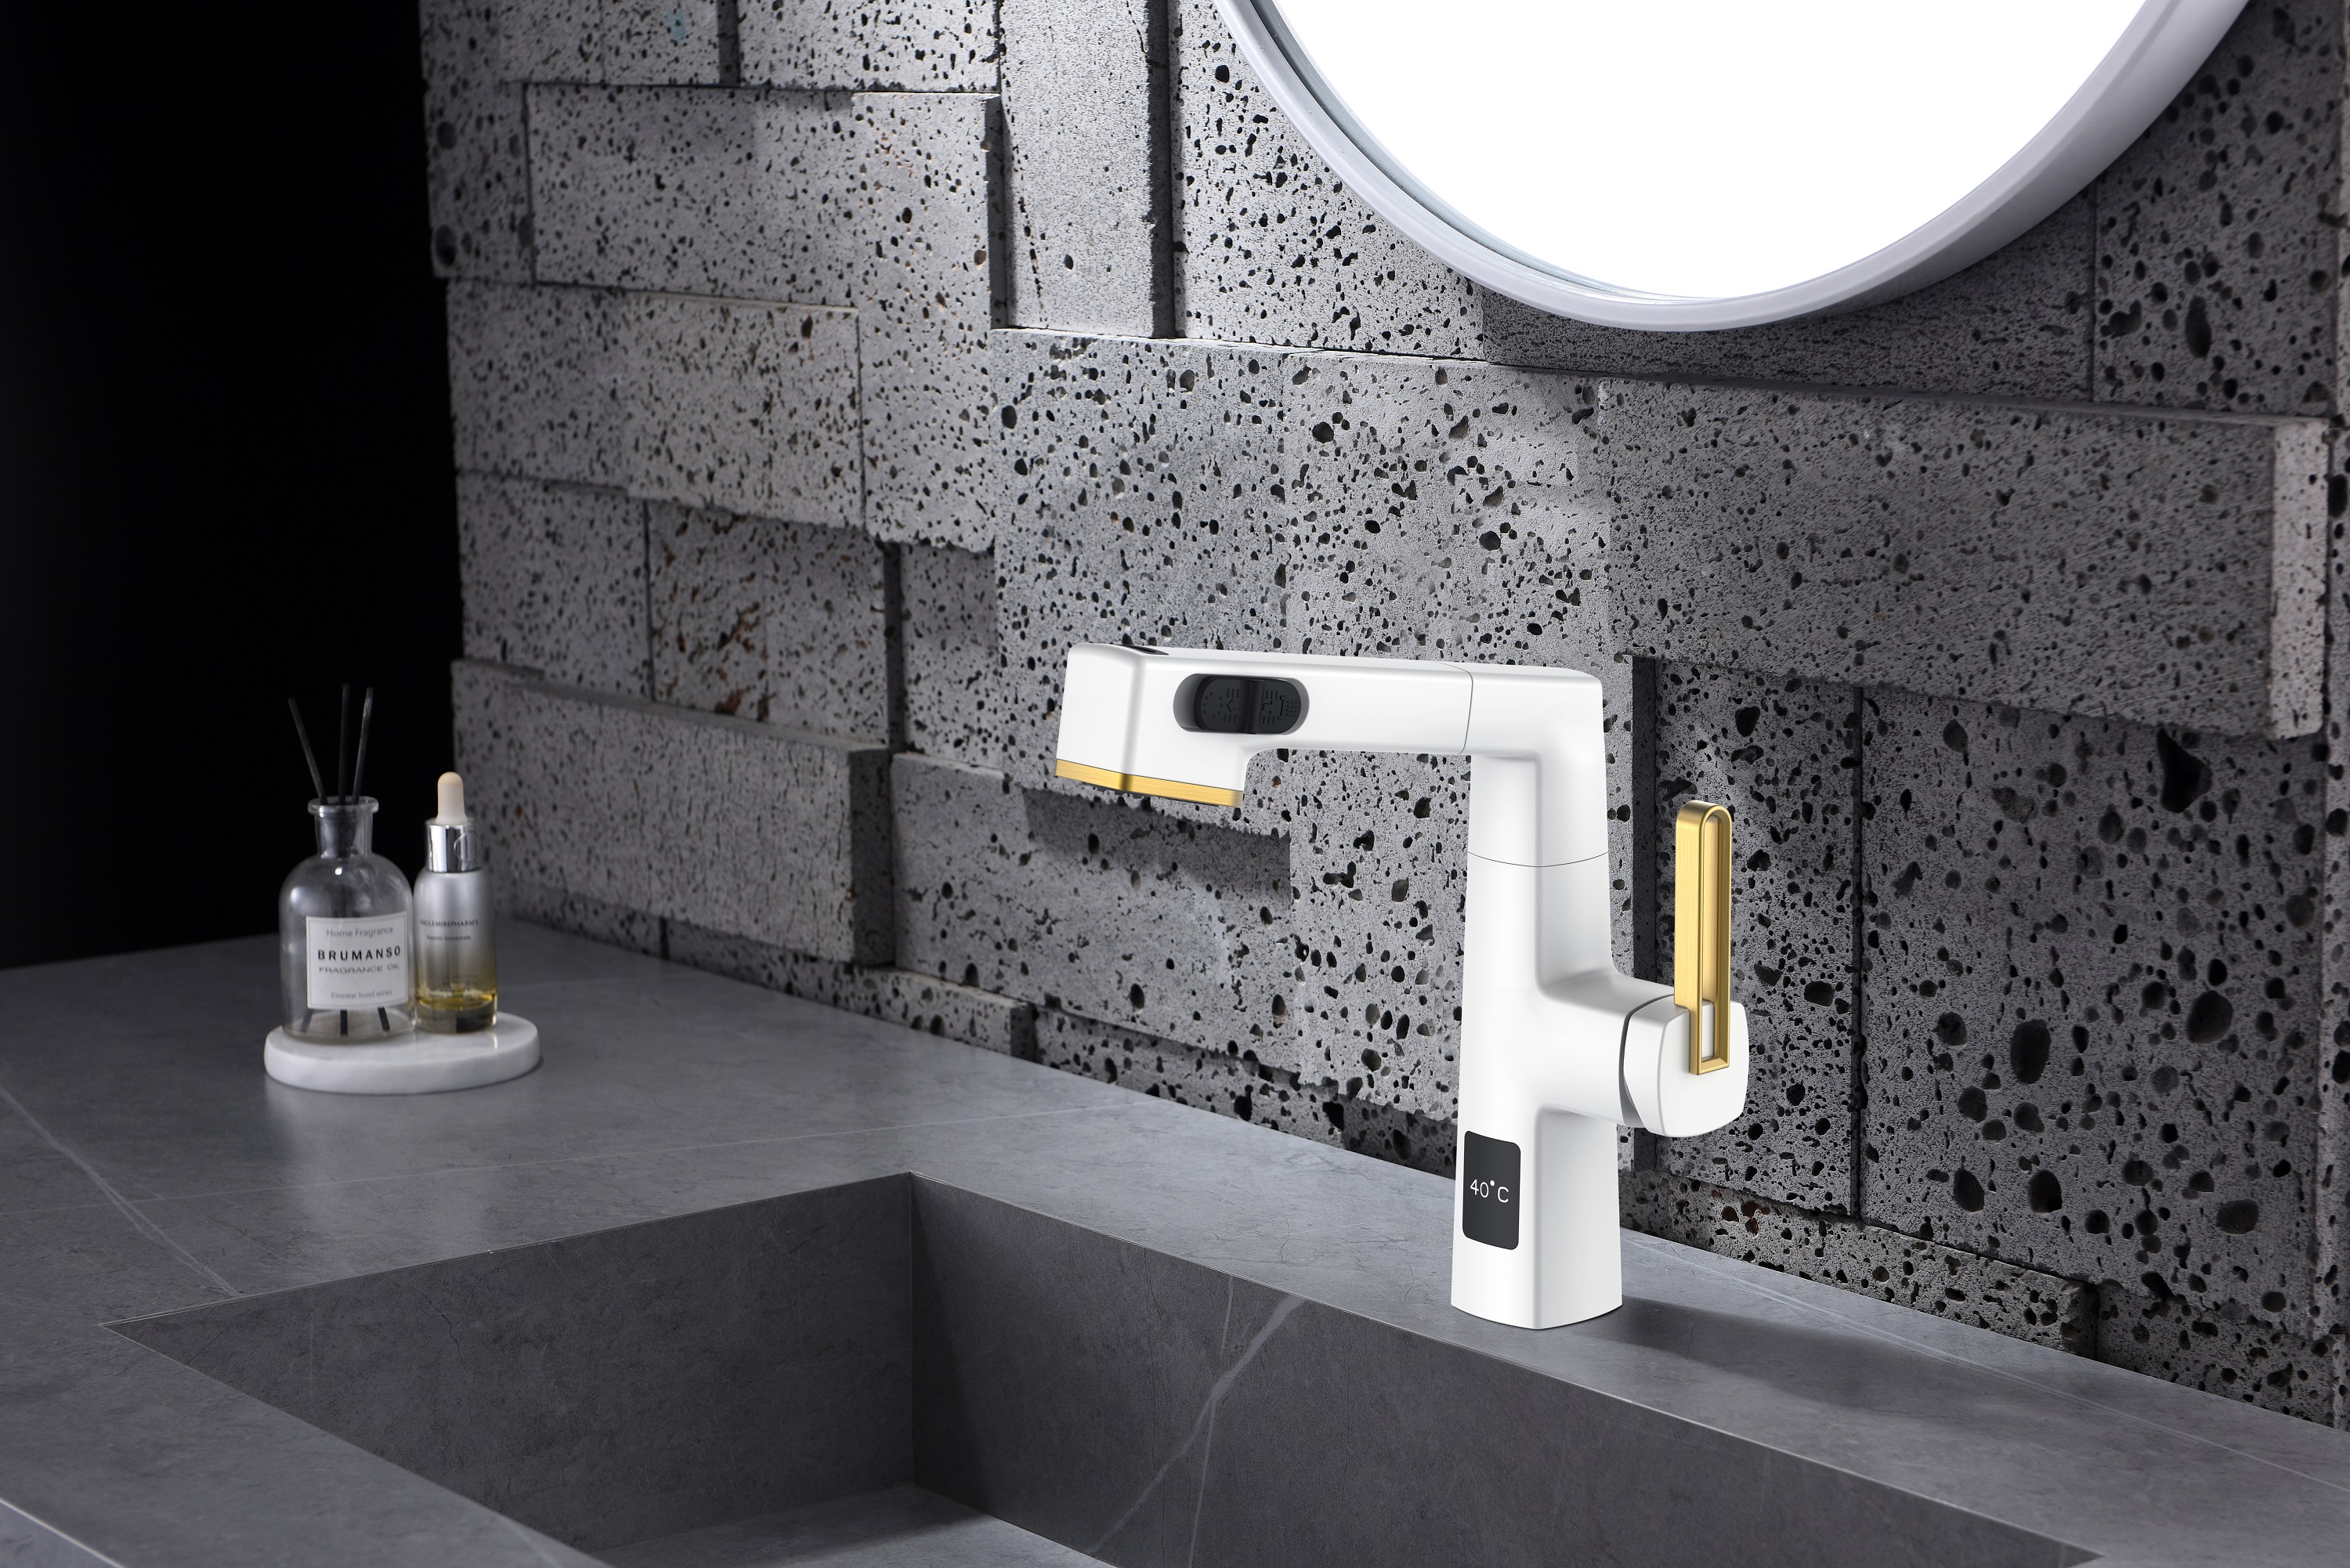  Hauteur réglable du robinet de salle de bains en acier inoxydable noir de conception unique d'affichage de la température